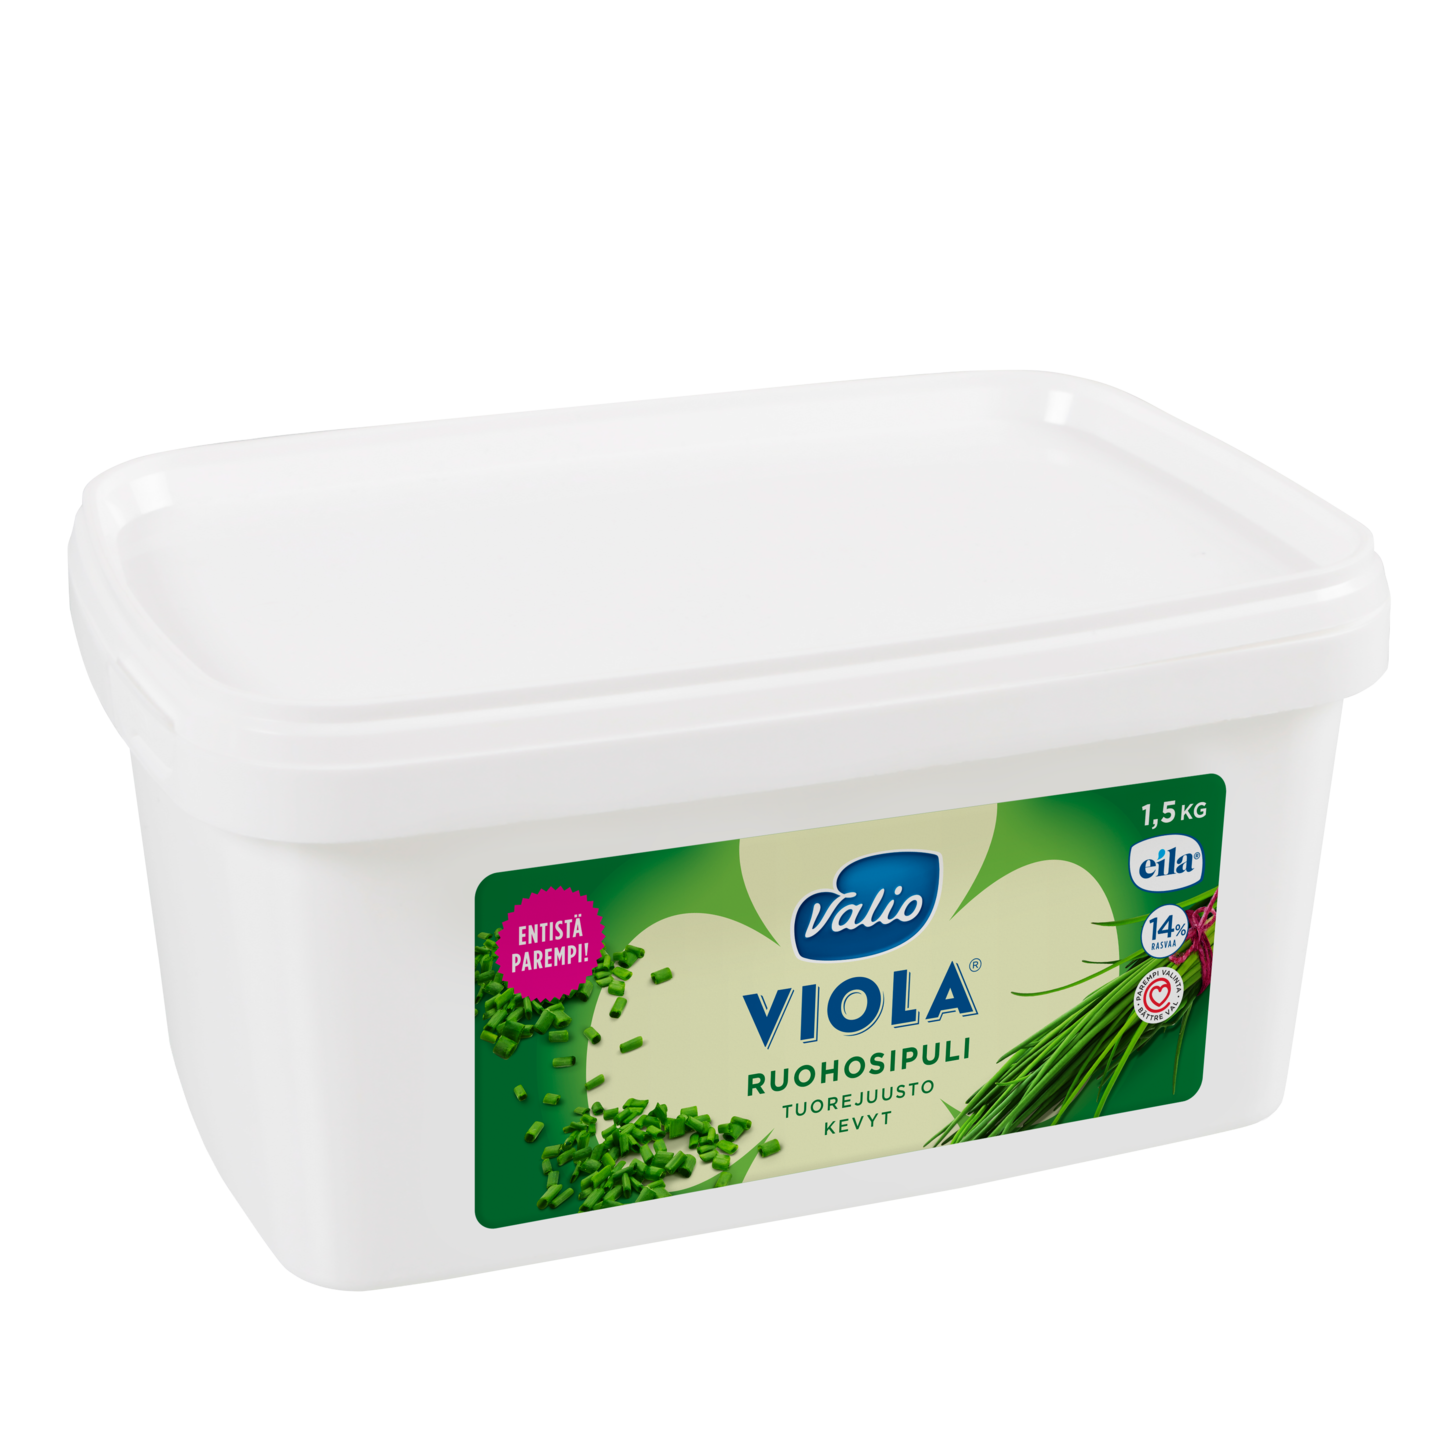 Valio Viola kevyt 1,5 kg ruohosipuli tuorejuusto laktoositon